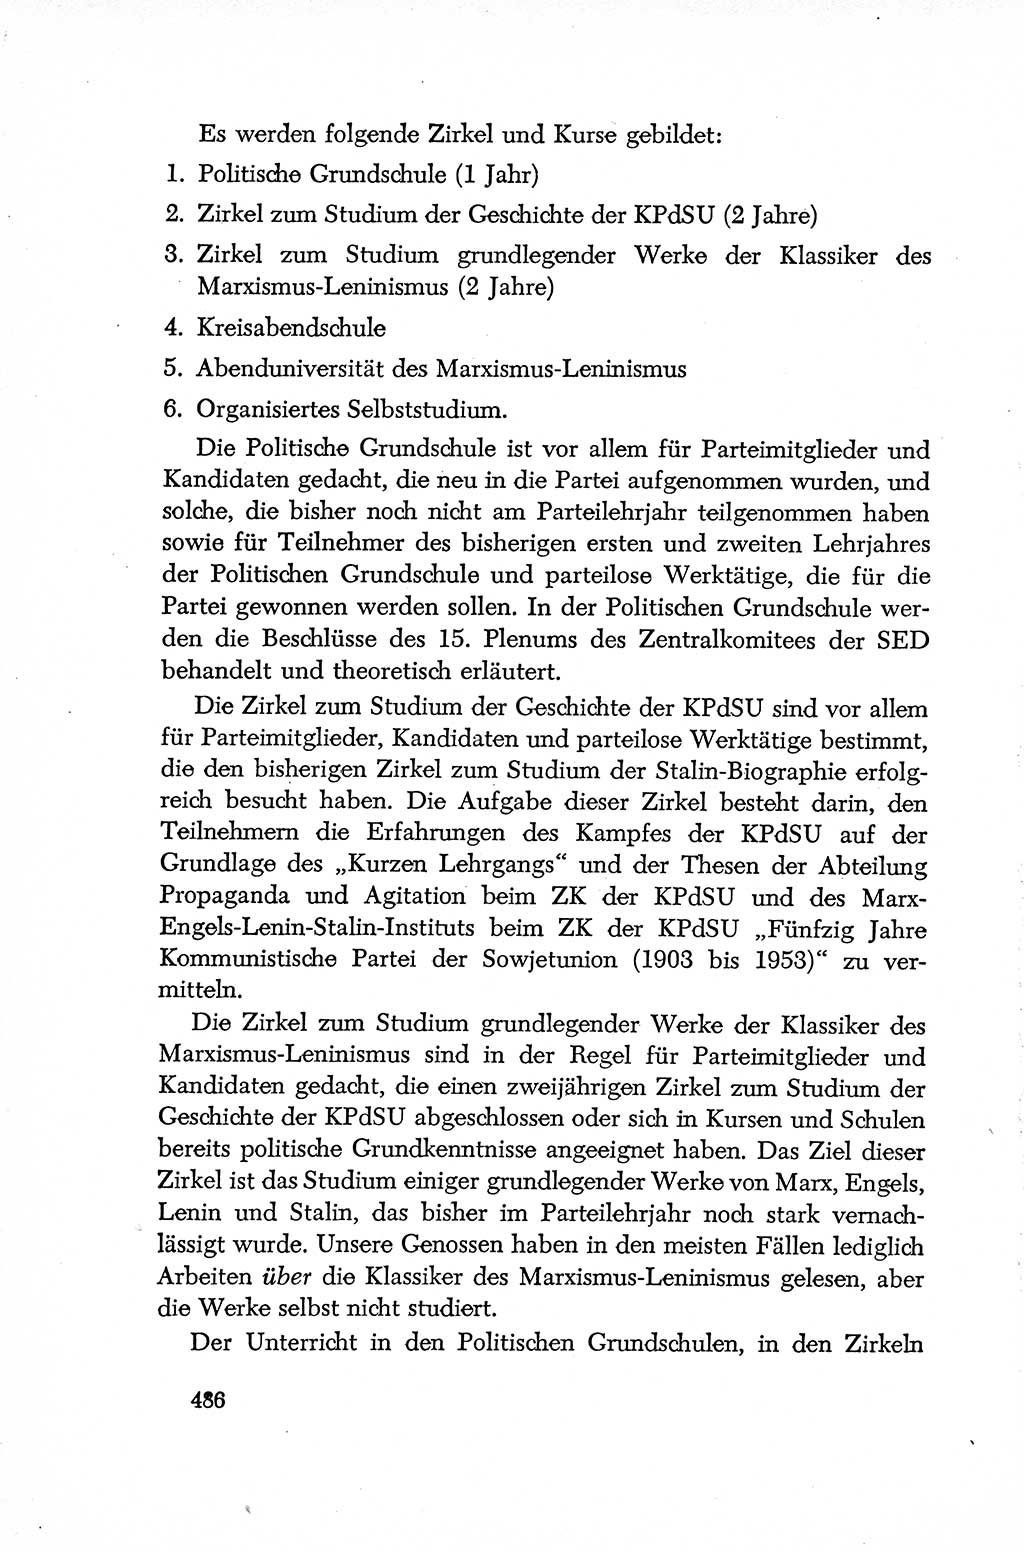 Dokumente der Sozialistischen Einheitspartei Deutschlands (SED) [Deutsche Demokratische Republik (DDR)] 1952-1953, Seite 486 (Dok. SED DDR 1952-1953, S. 486)